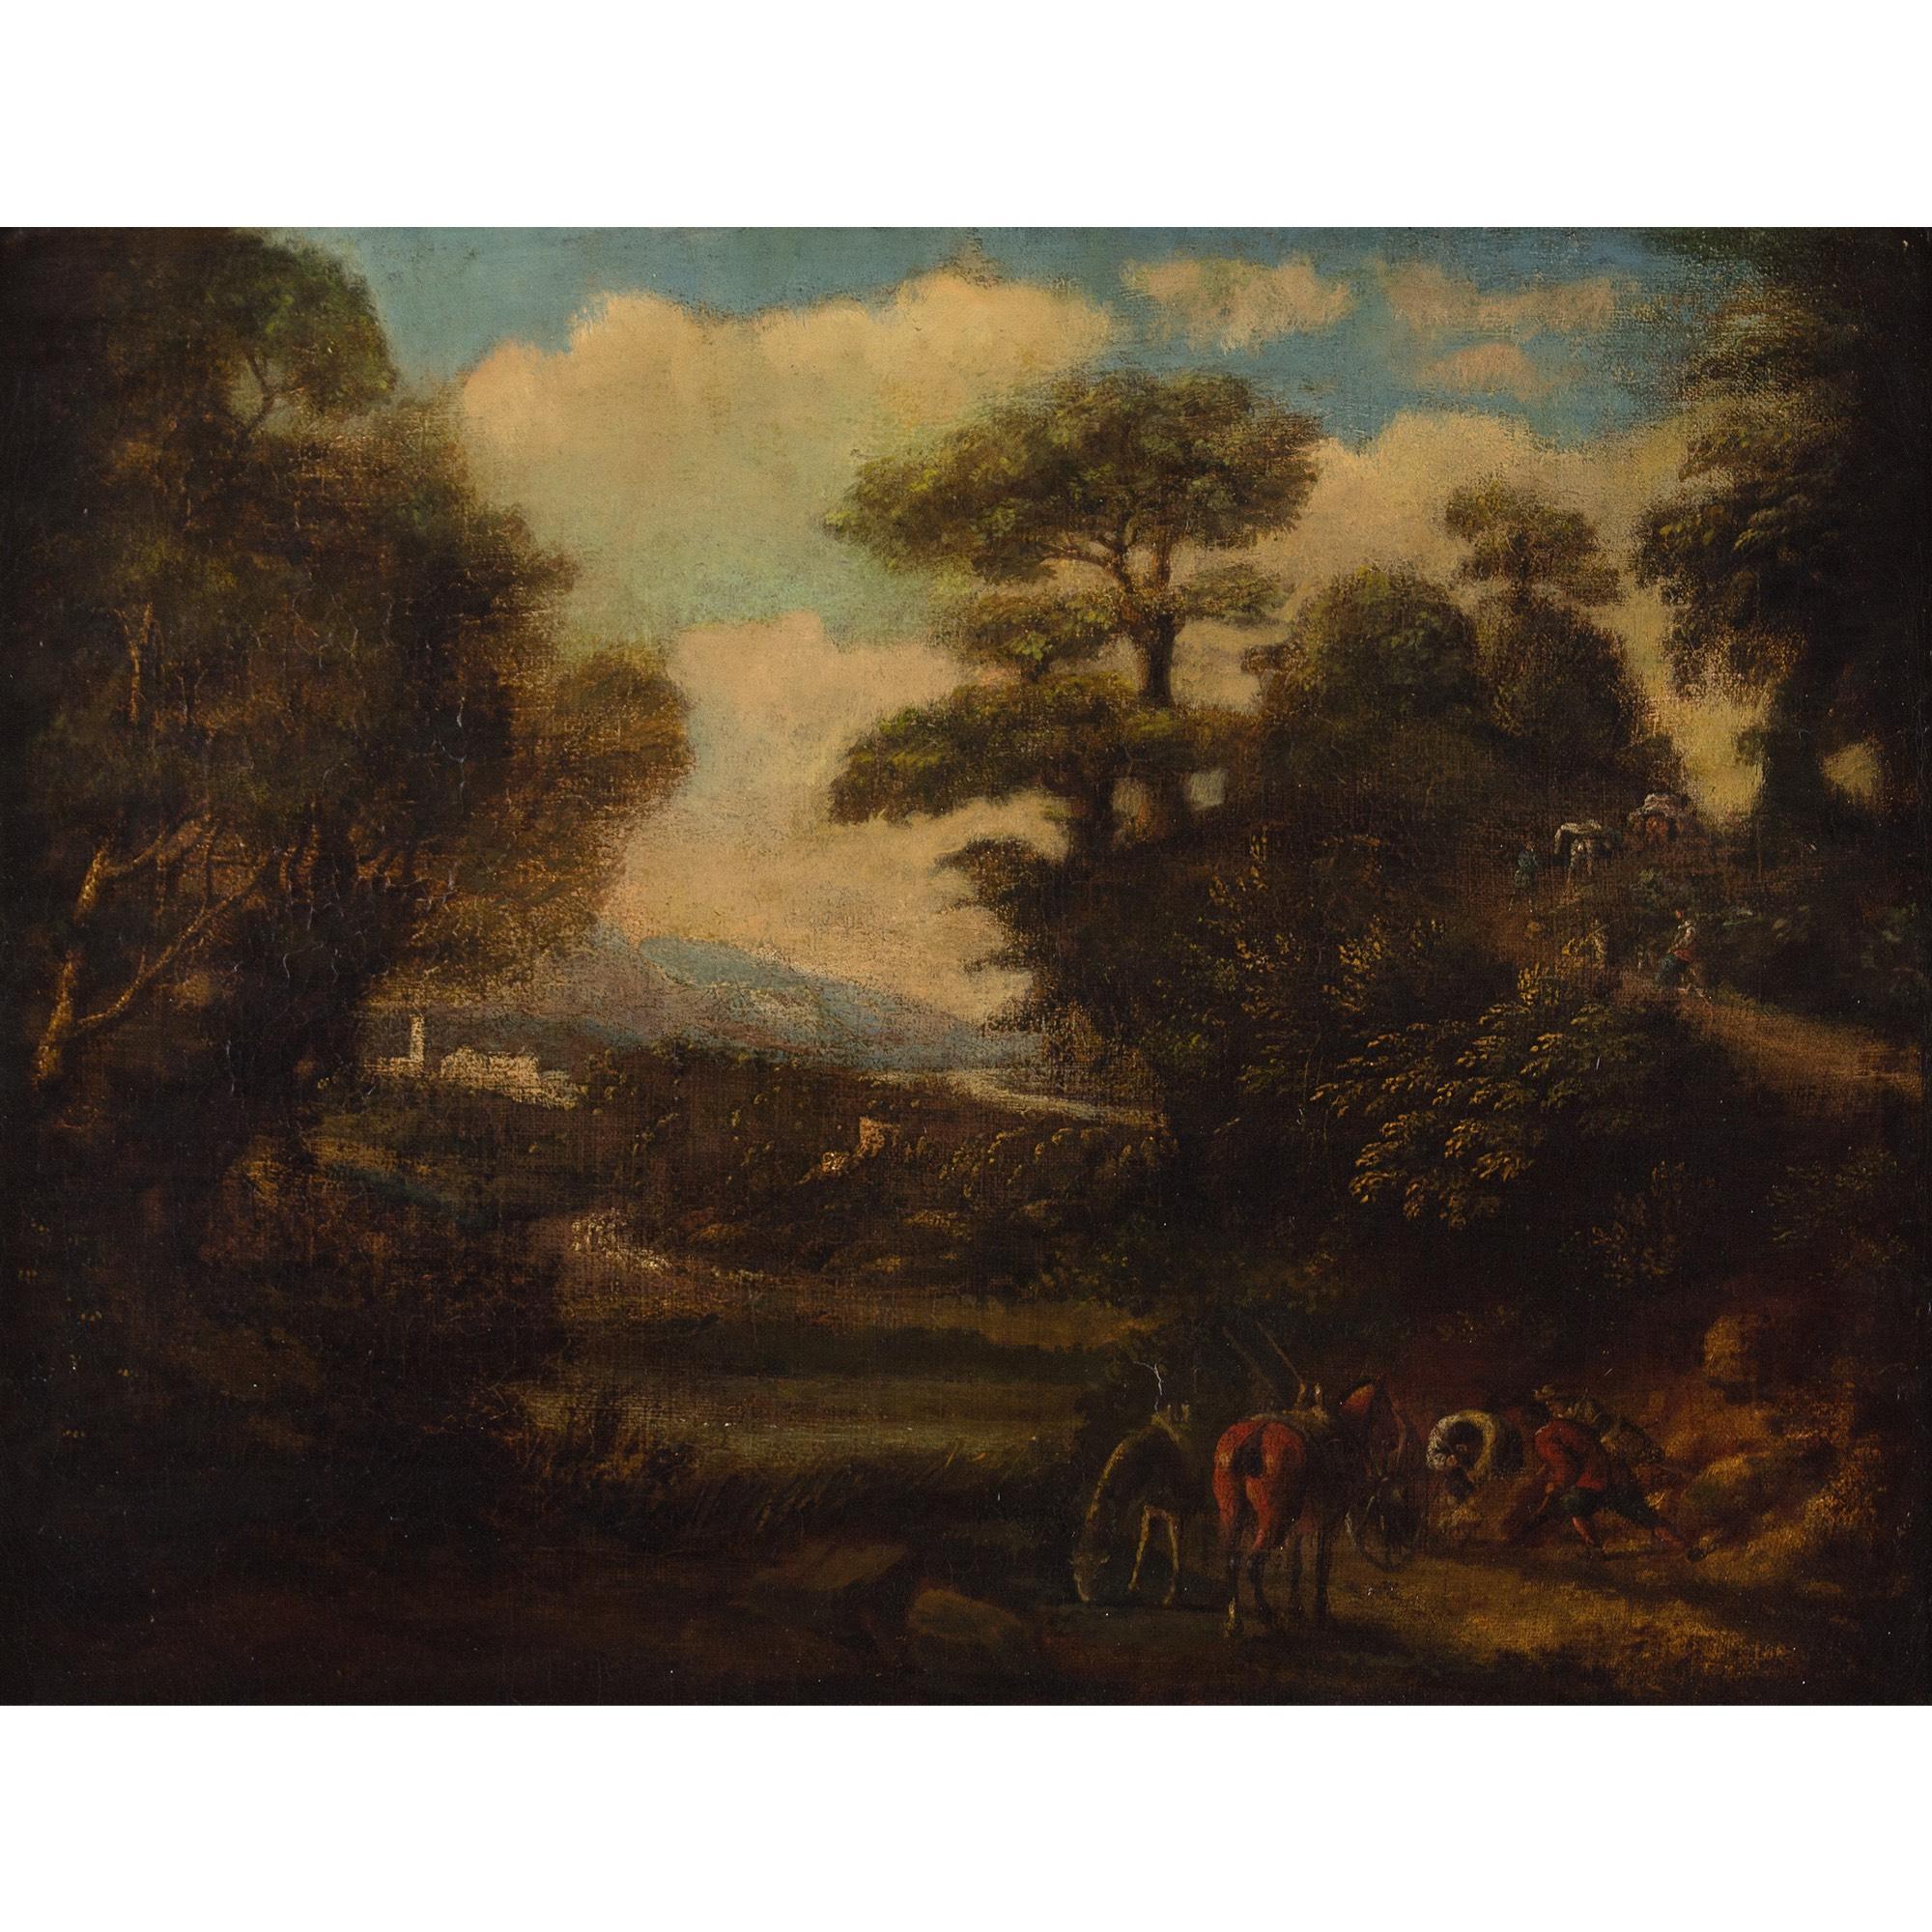 Idealisierte italienische Landschaft des frühen 18. Jahrhunderts mit Figuren und Rindern – Painting von Unknown